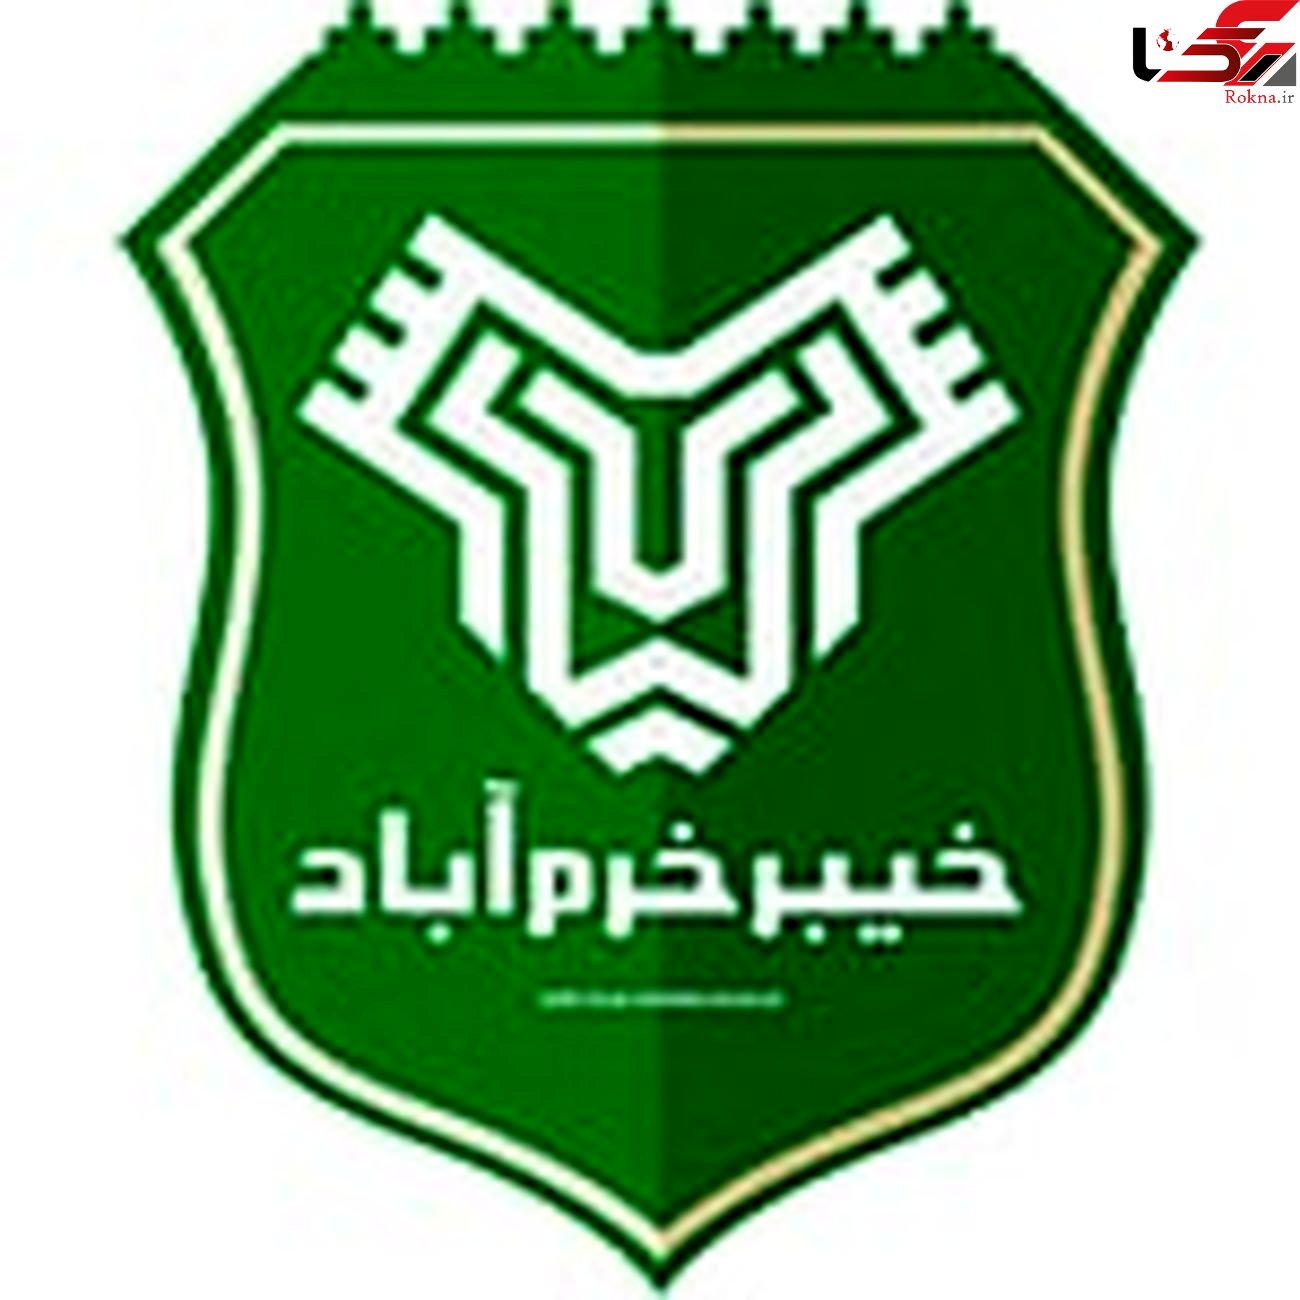 چهارمین پیروزی متوالی خیبر در دیار شعر و ادب/ قشقایی شیراز متوقف شد